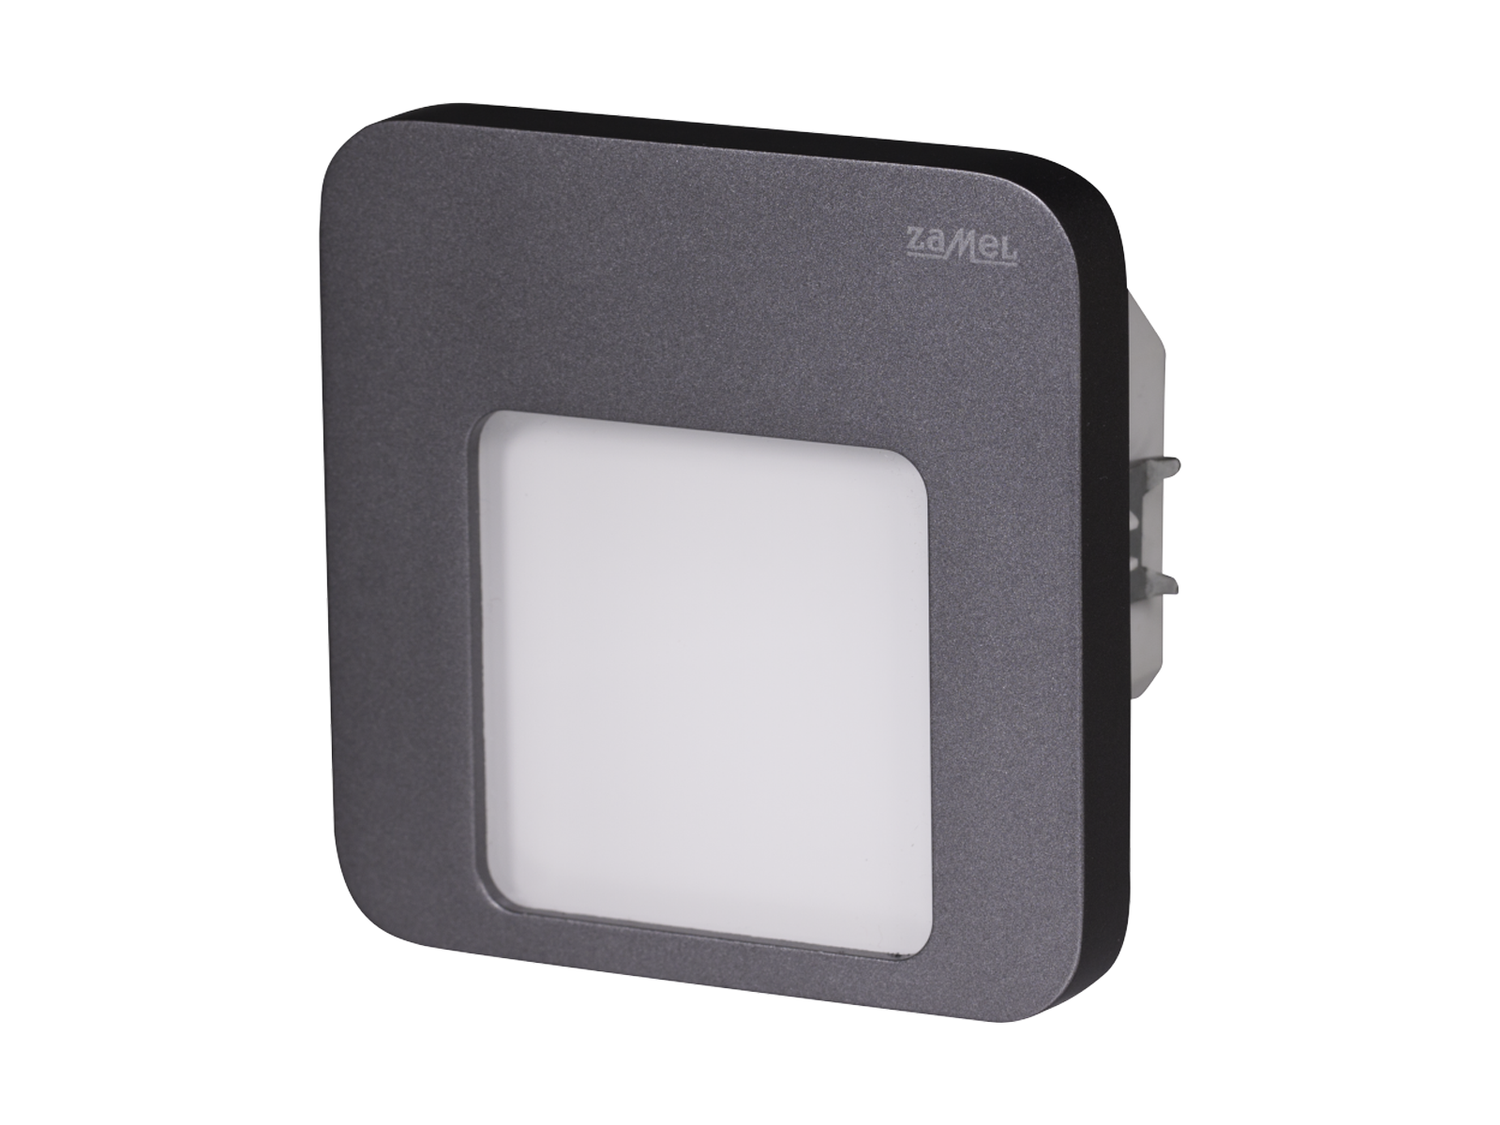 Svítidlo LED do KU krabice pod omítku LEDIX MOZA 230V AC, grafit, teplá bílá, IP20